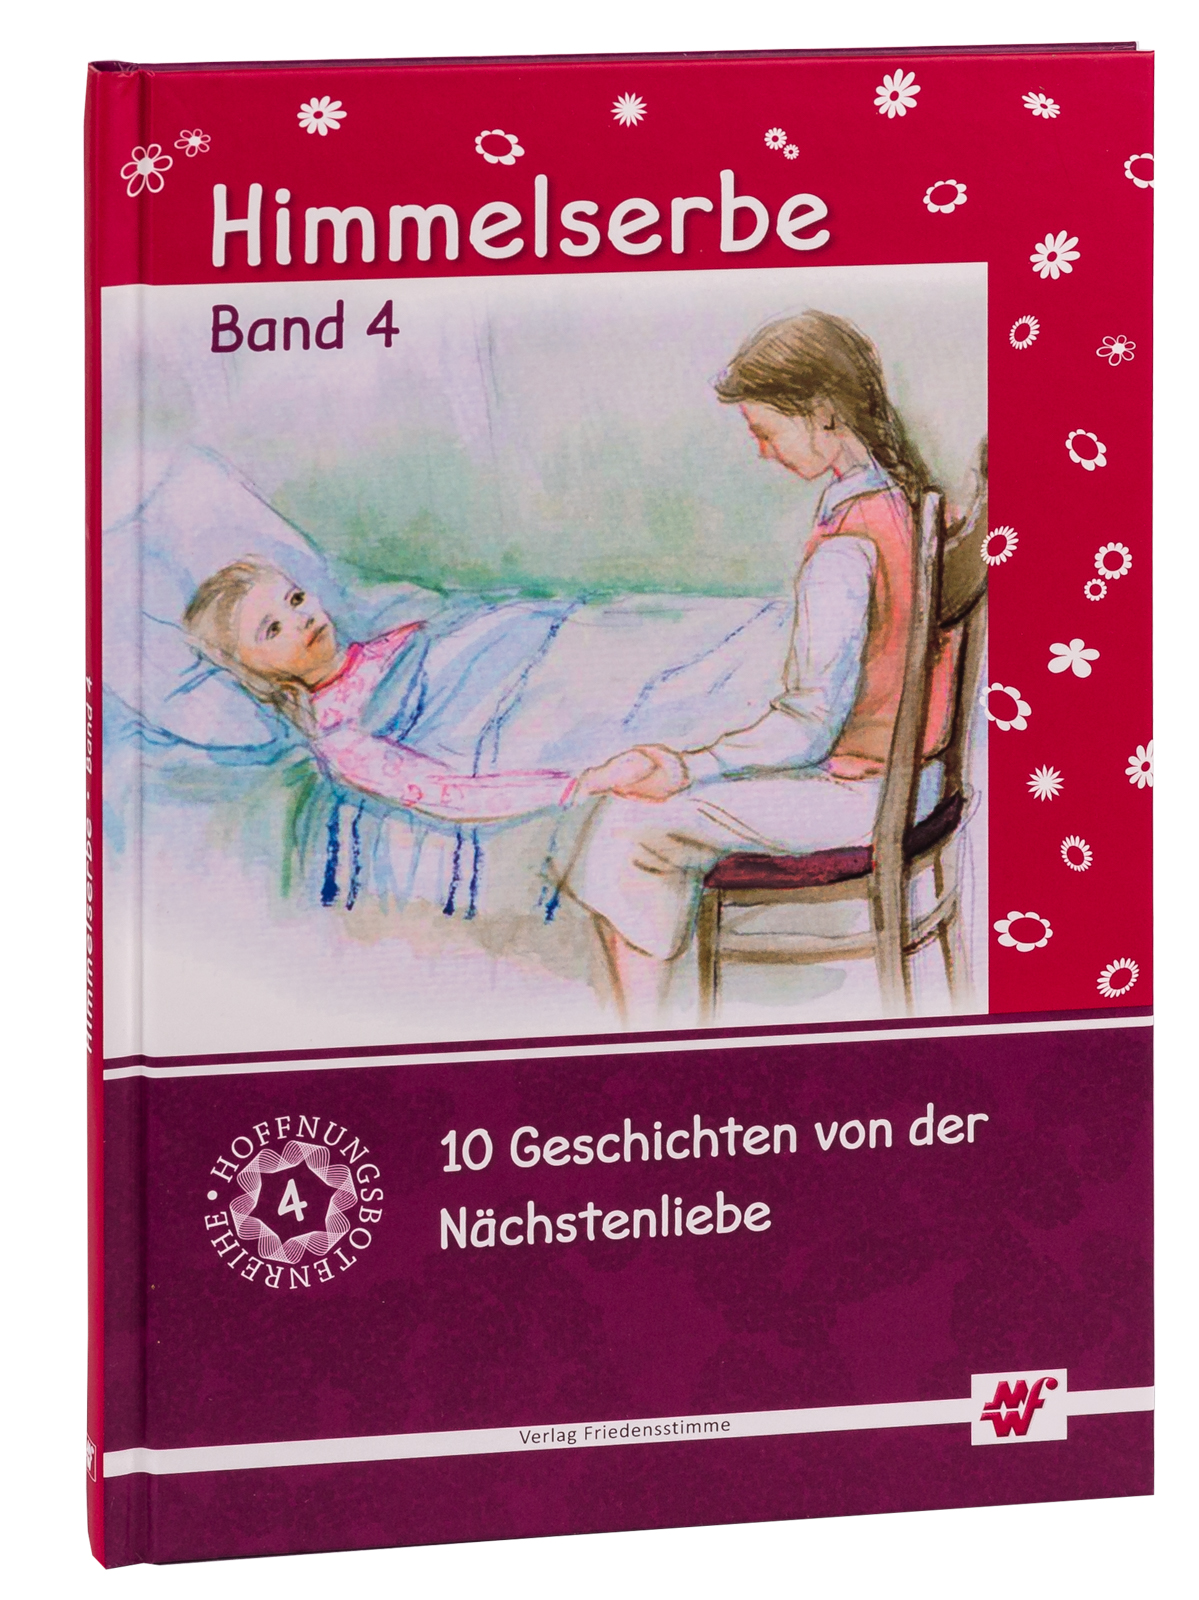 Himmelserbe Set (Band 1-5)